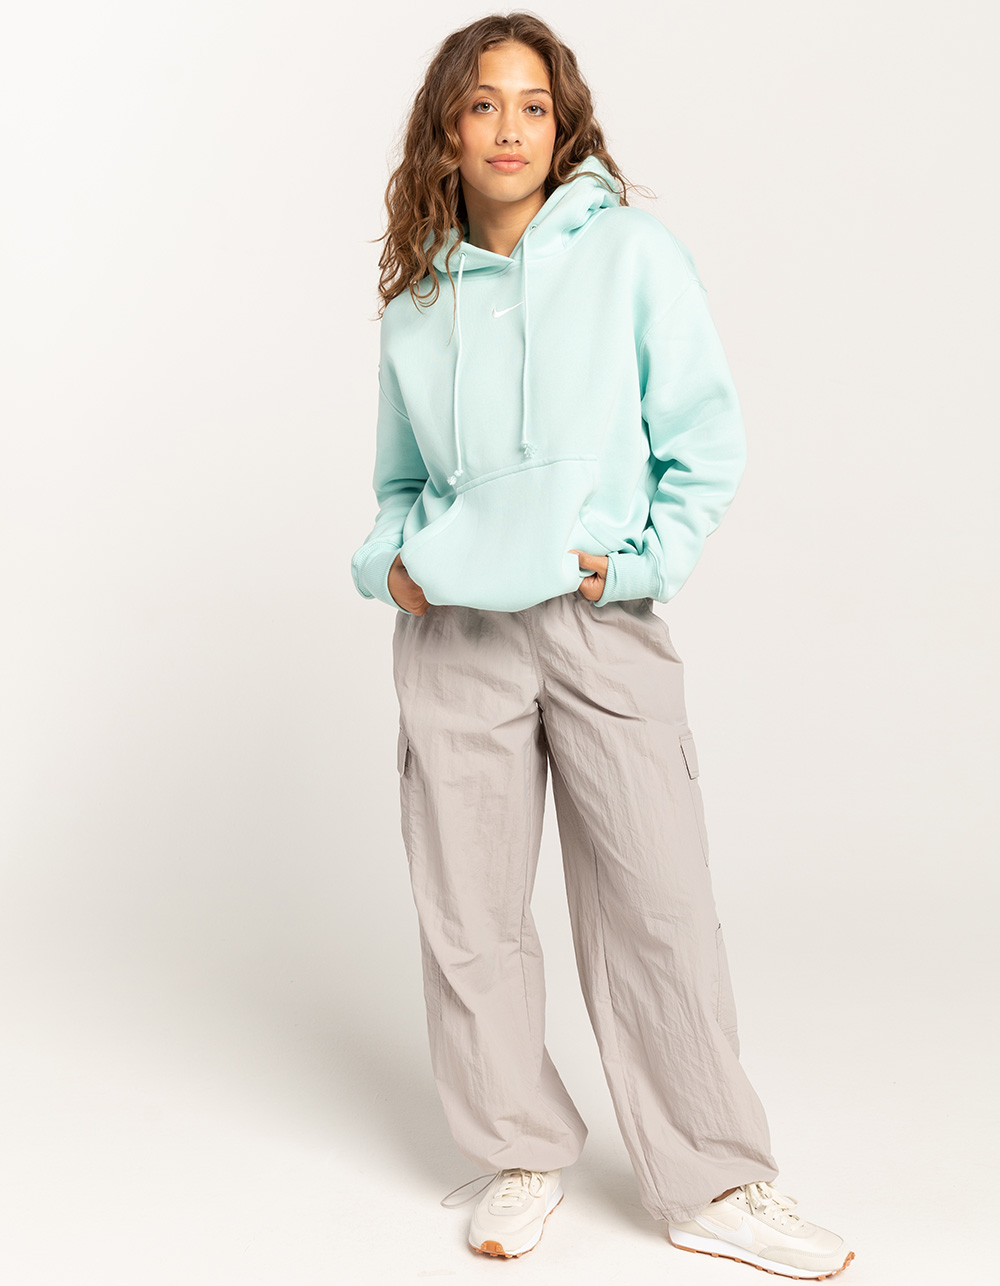 NIKE Sportswear Phoenix Womens Oversized Crewneck Sweatshirt - TEAL BLUE, Tillys